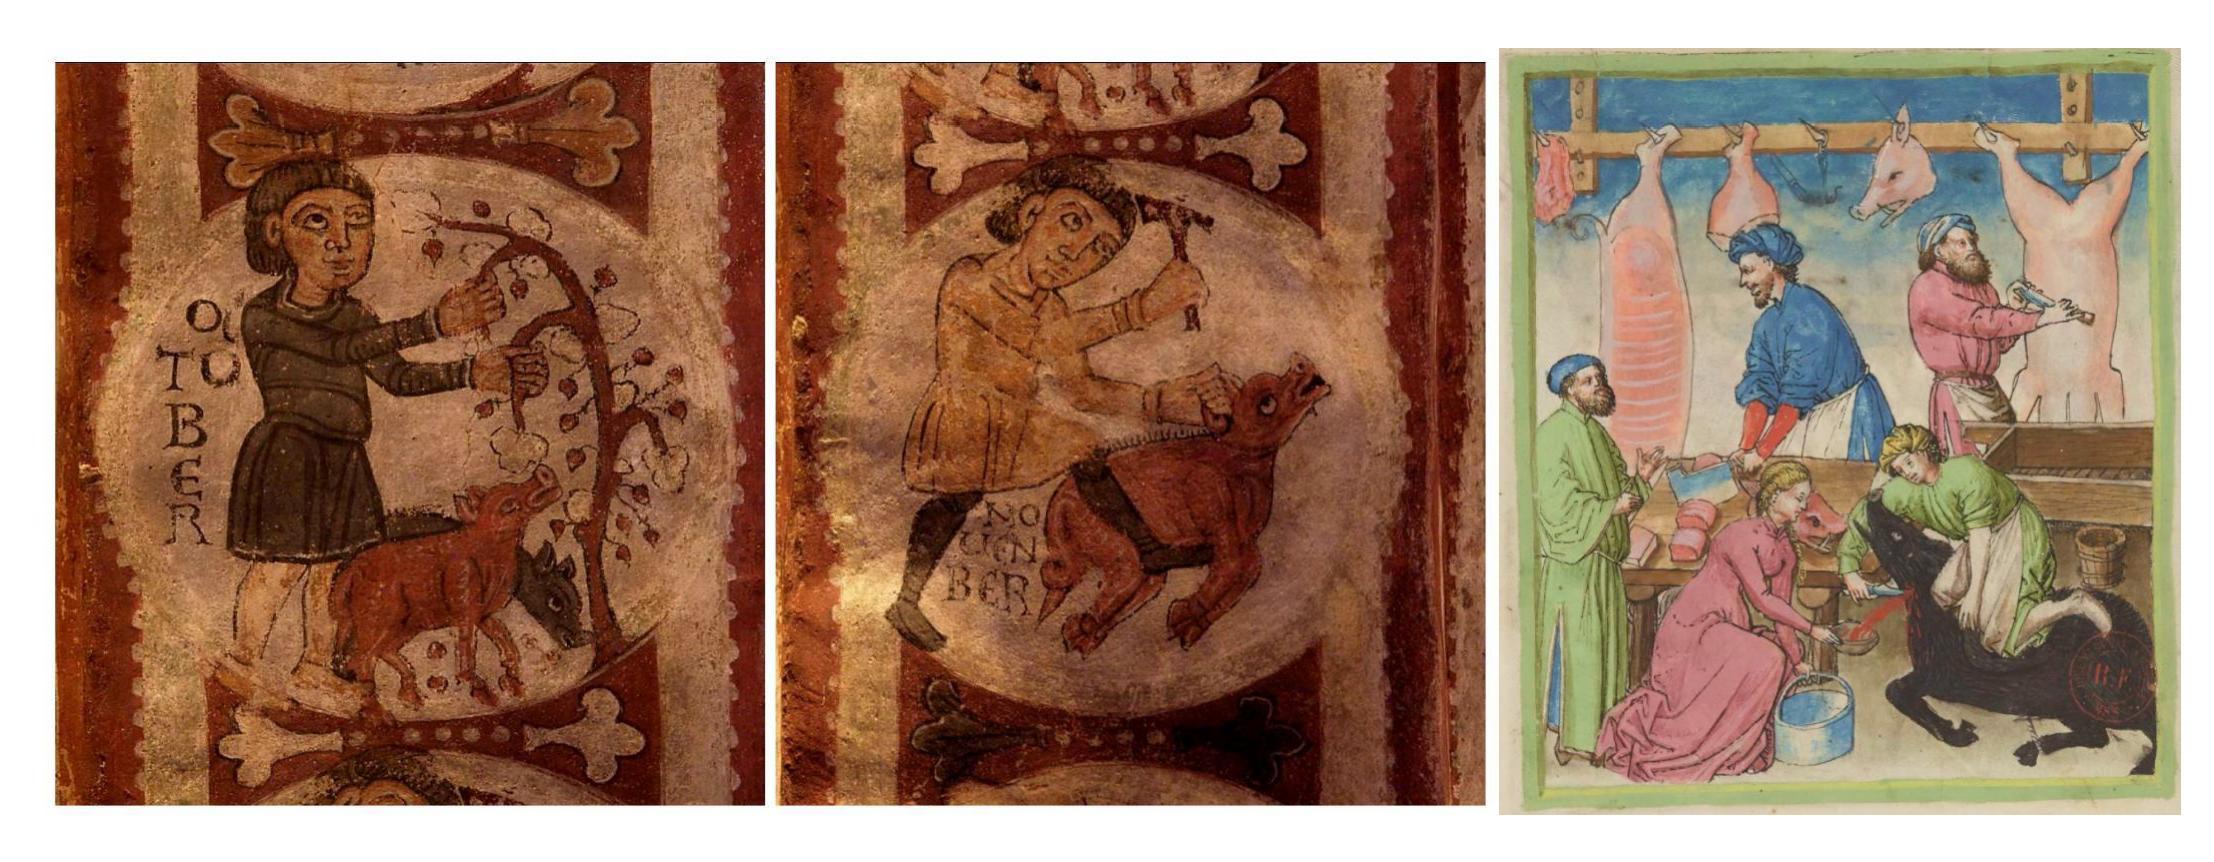 Imágenes del engorde y matanza del cerdo en S. Isidoro de León y en el medieval Tacuinum sanitatis. 